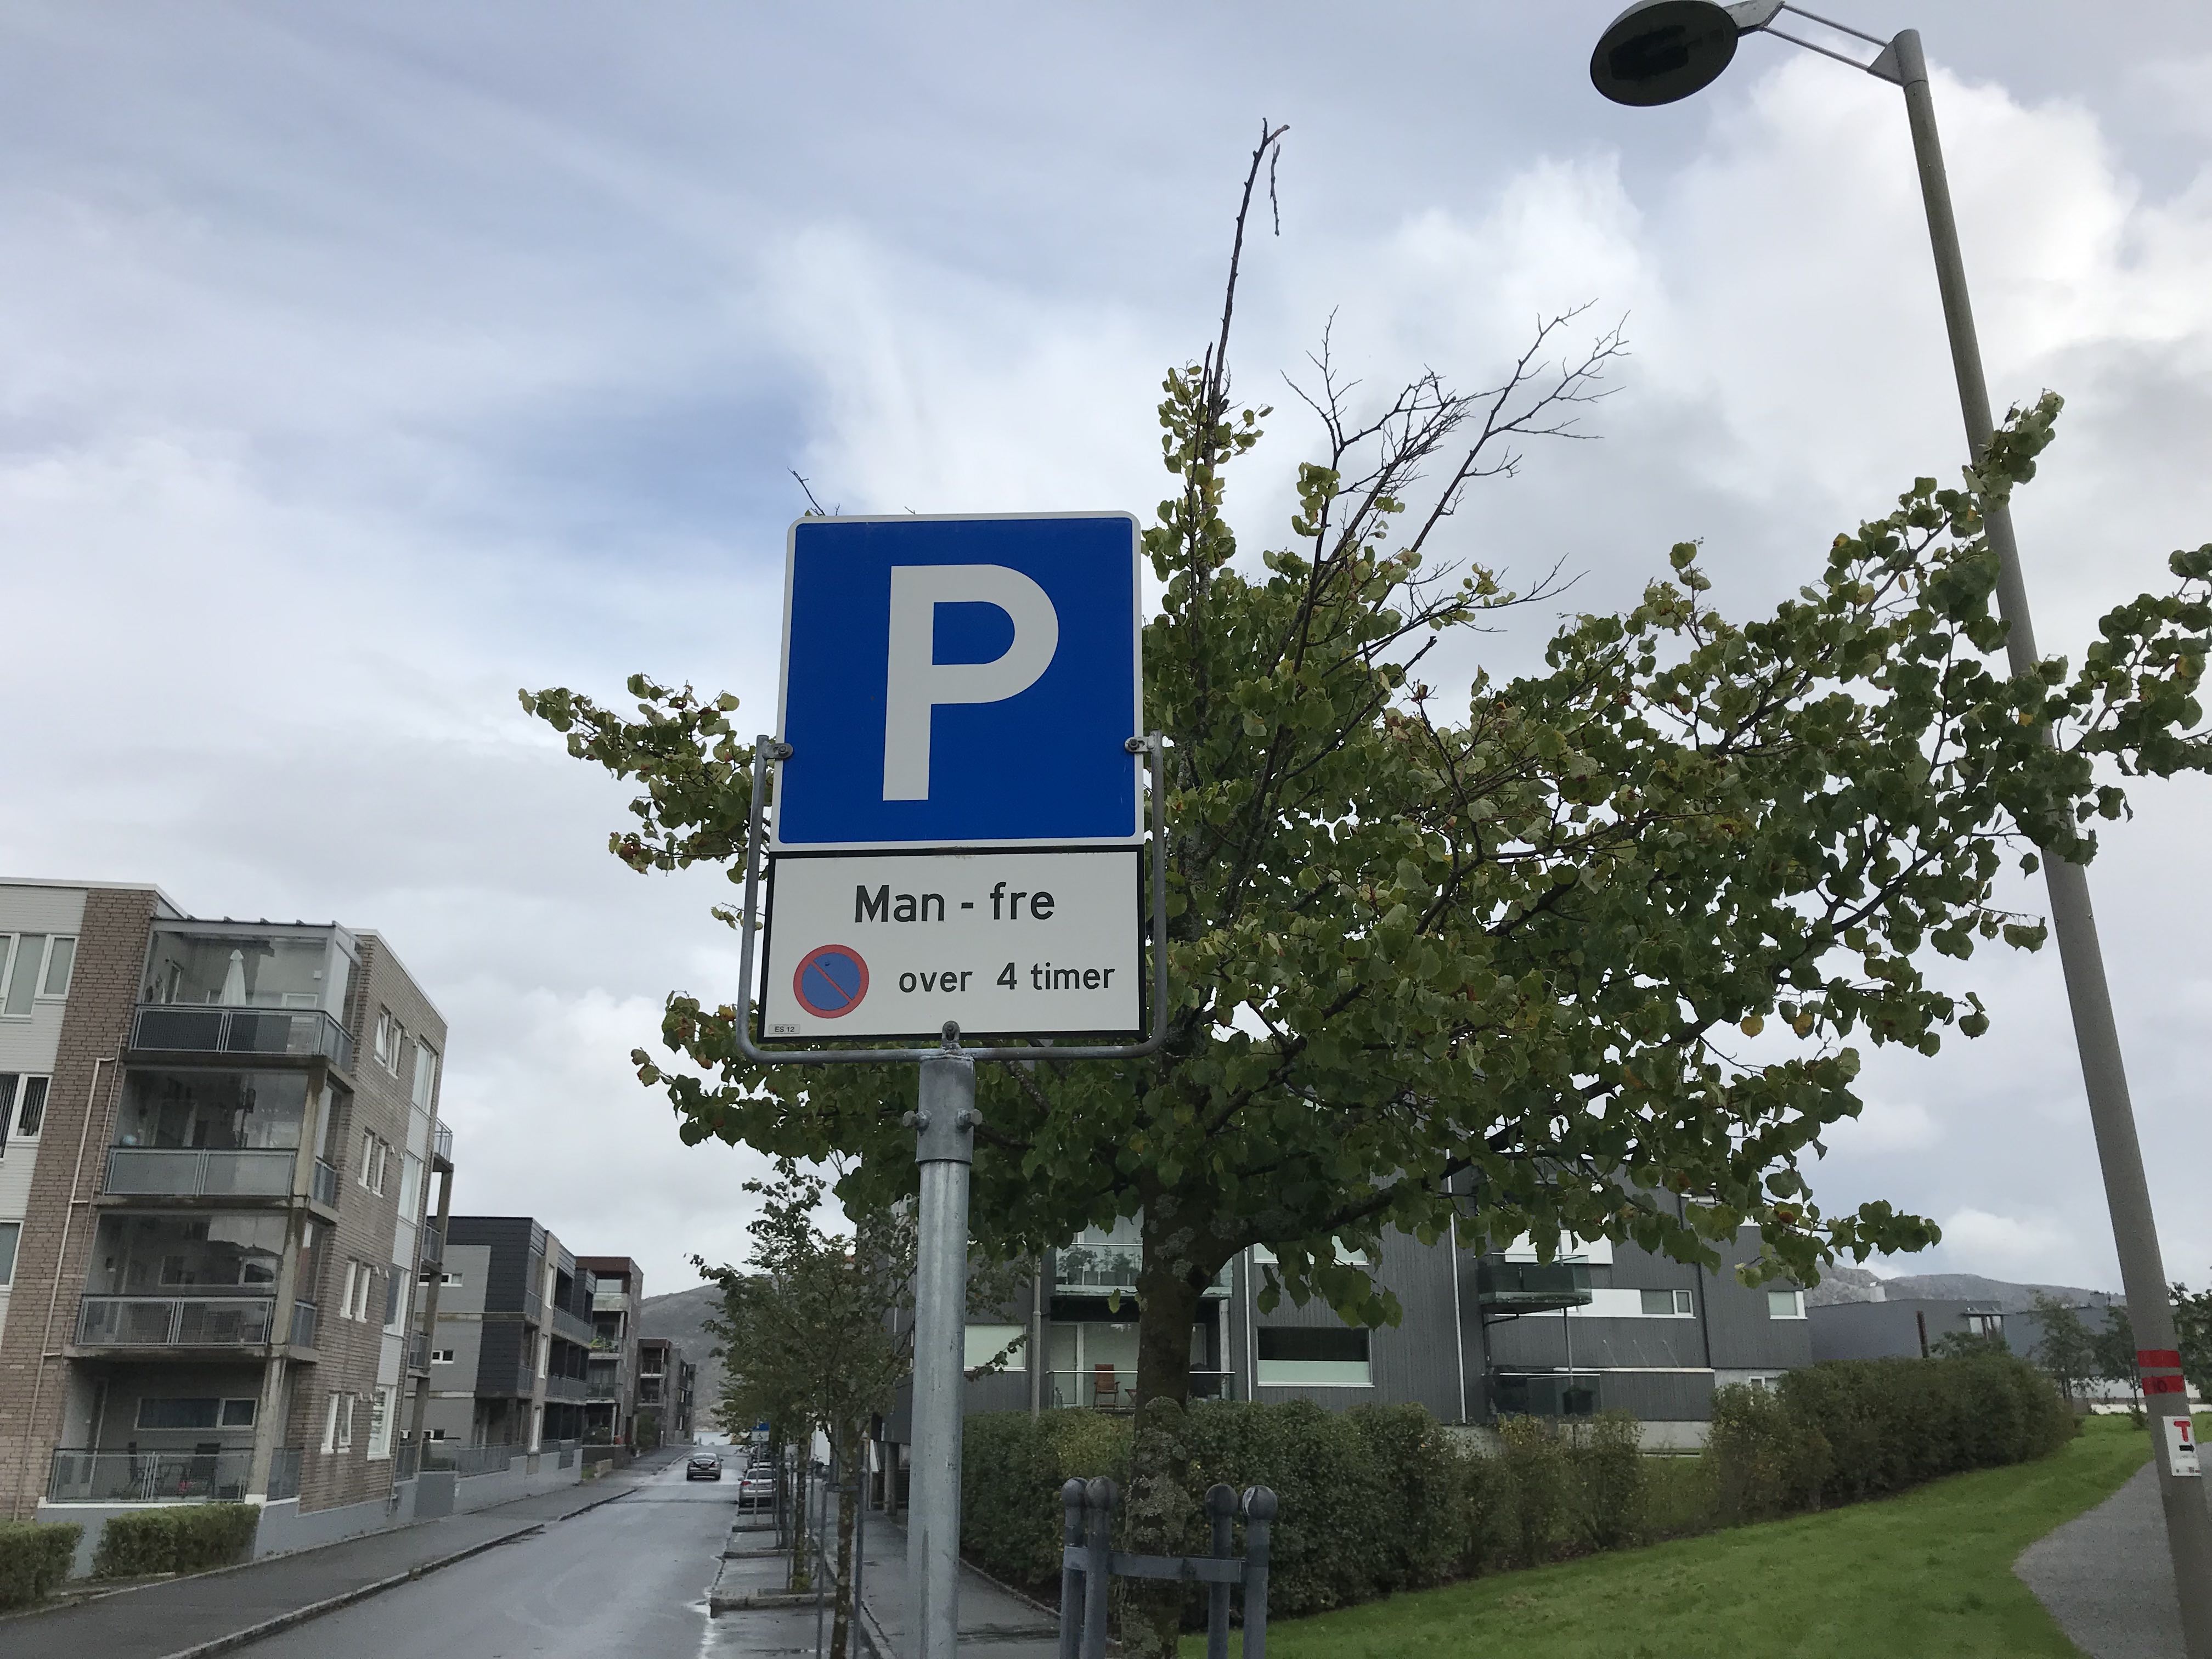 Parkering Laberget Hinna Park velforening ble stiftet mai 2018 av Harald Krohn-Pettersen og Gunnar Nygård